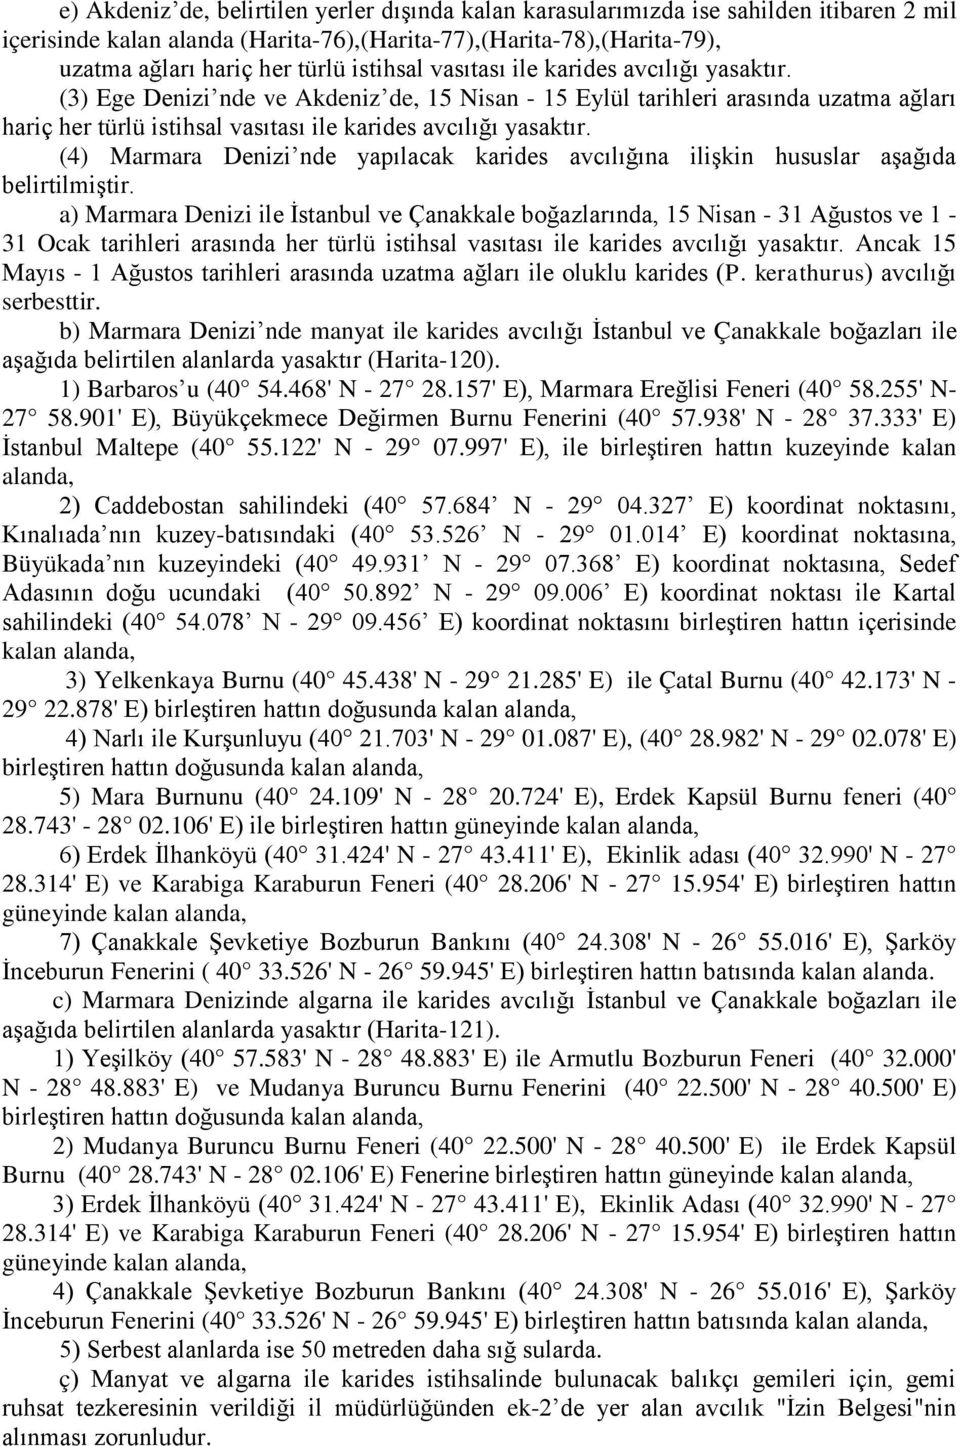 (4) Marmara Denizi nde yapılacak karides avcılığına ilişkin hususlar aşağıda belirtilmiştir.